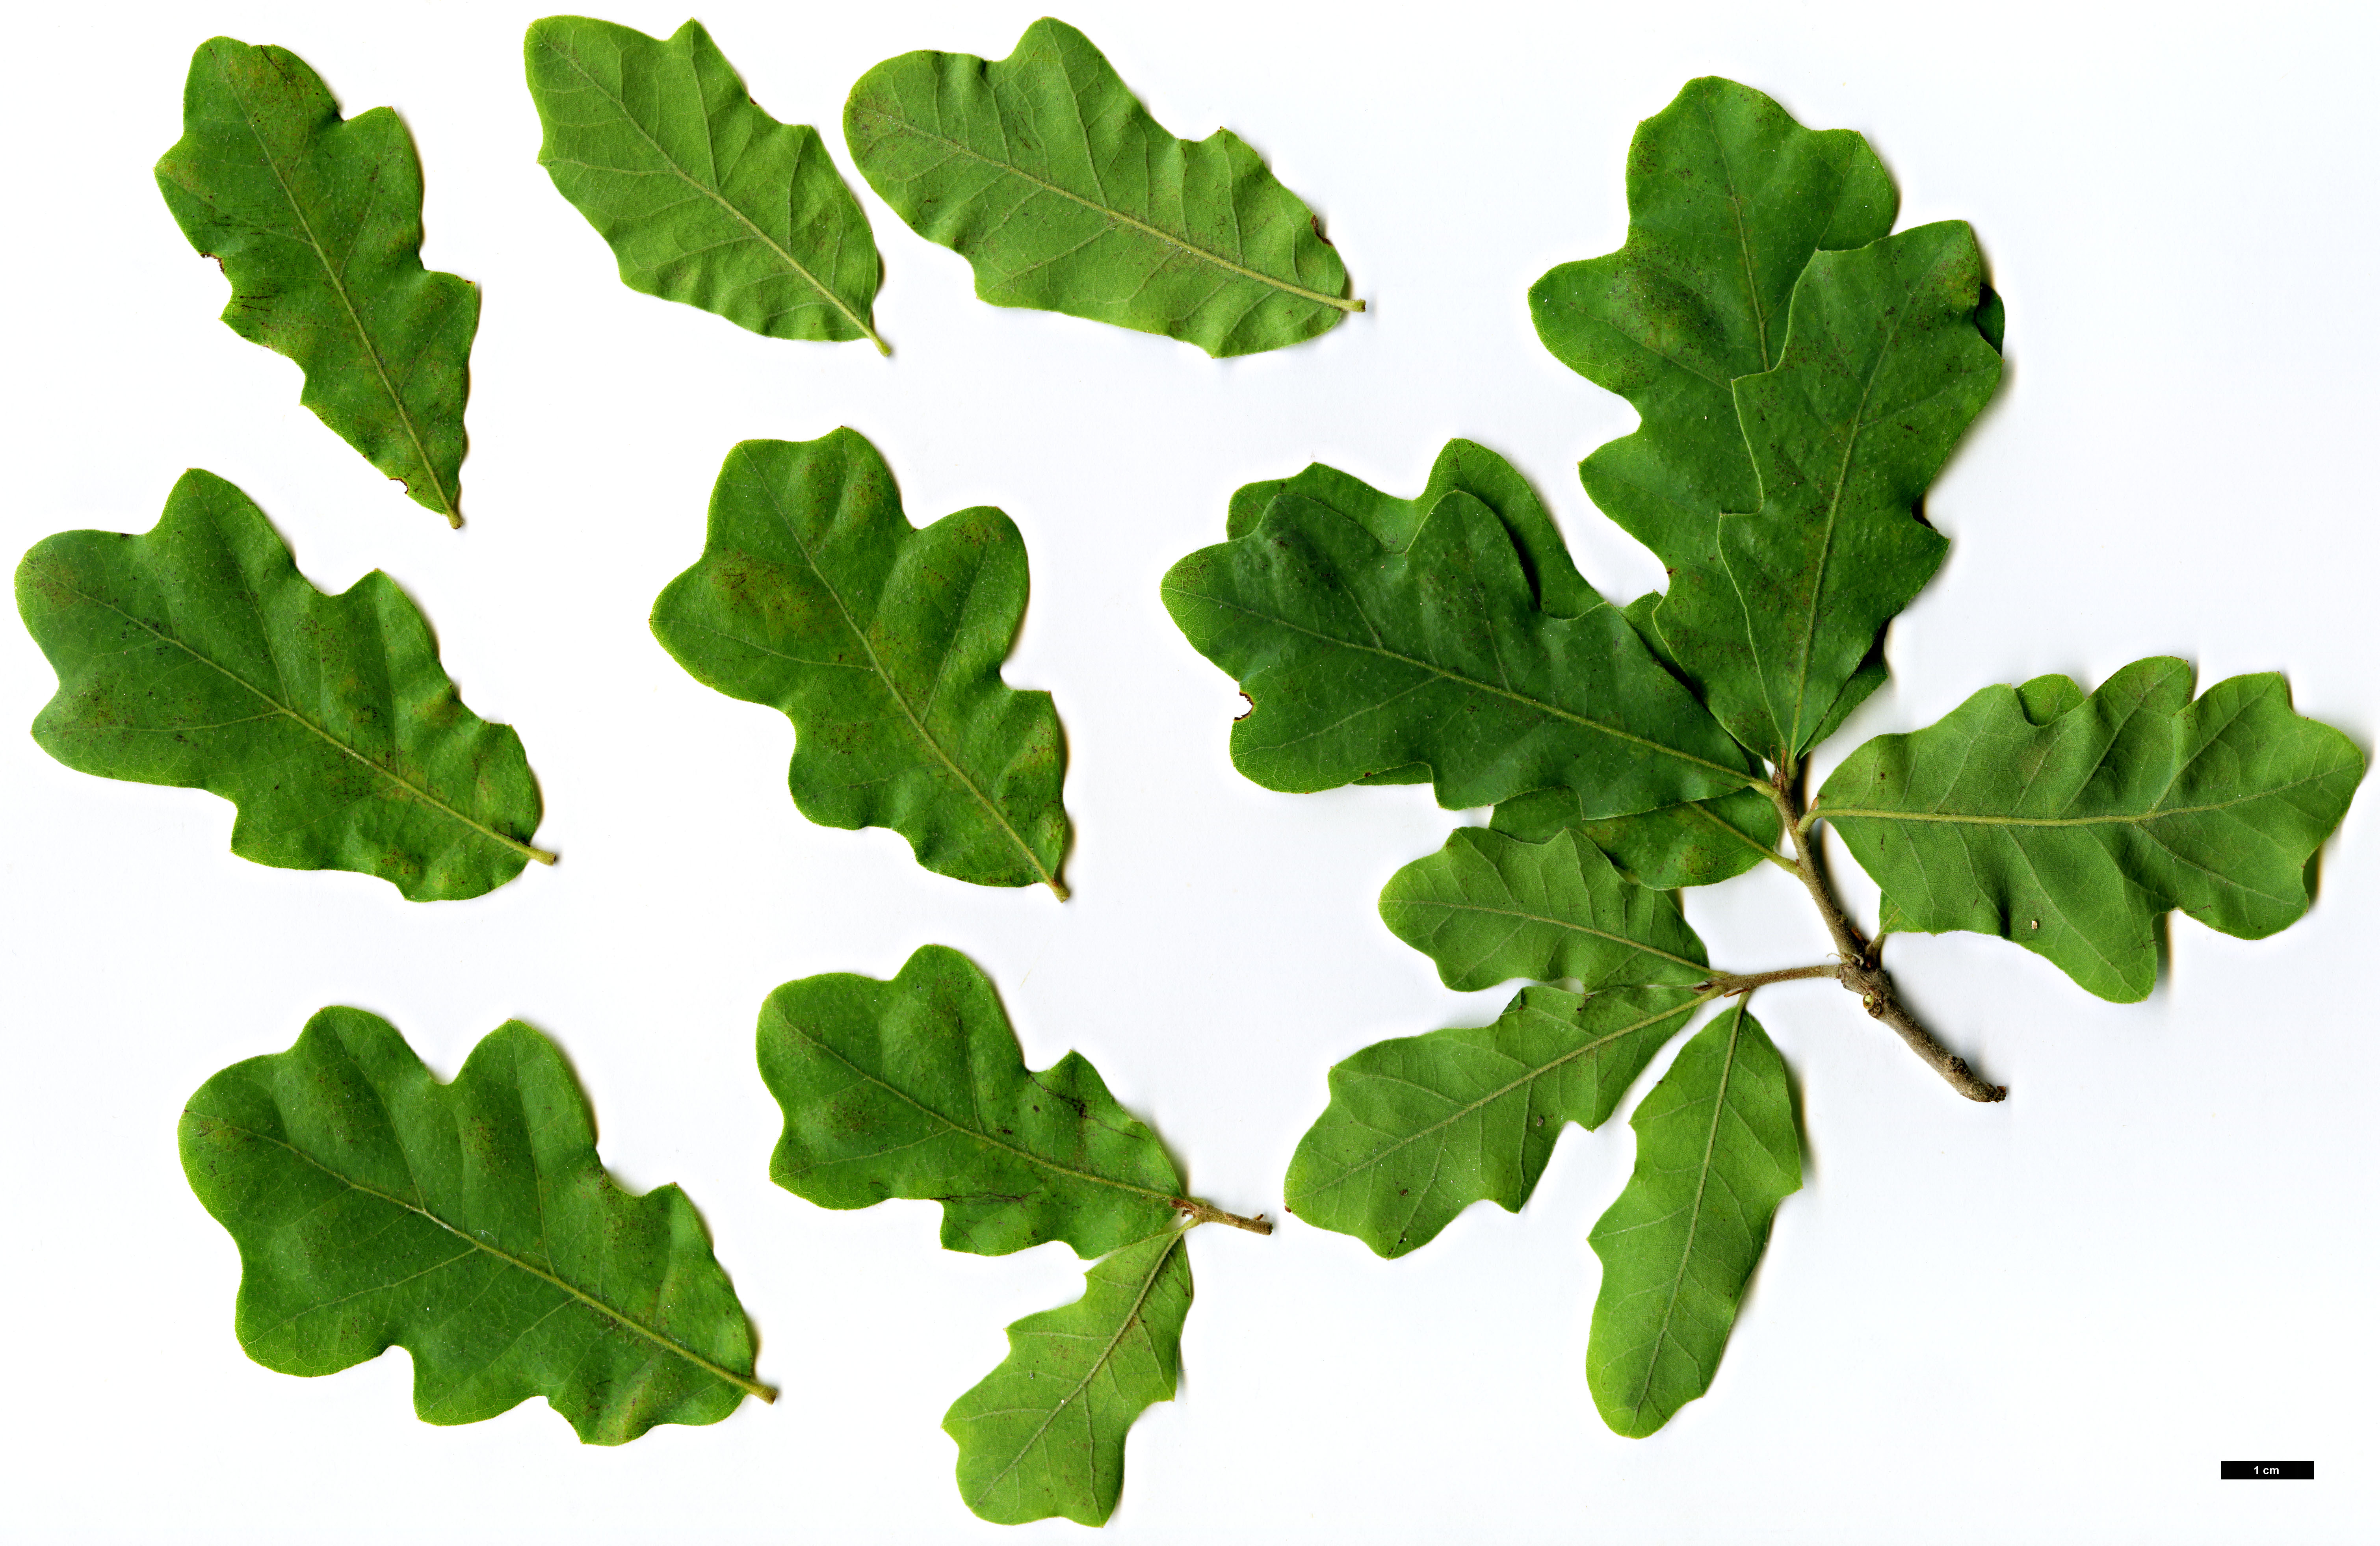 High resolution image: Family: Fagaceae - Genus: Quercus - Taxon: mohriana × Q.stellata